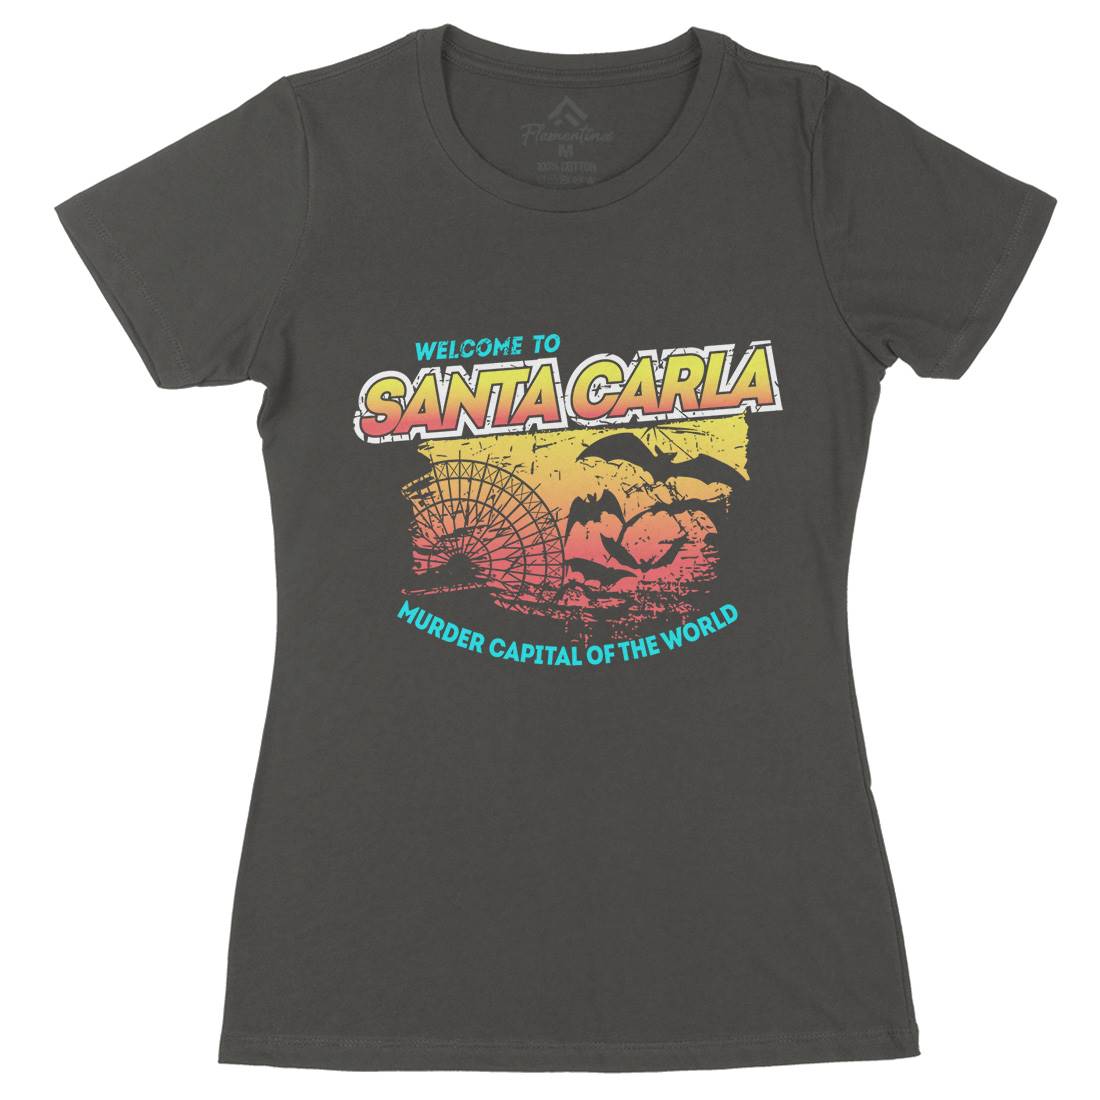 Santa Carla Womens Organic Crew Neck T-Shirt Horror D369